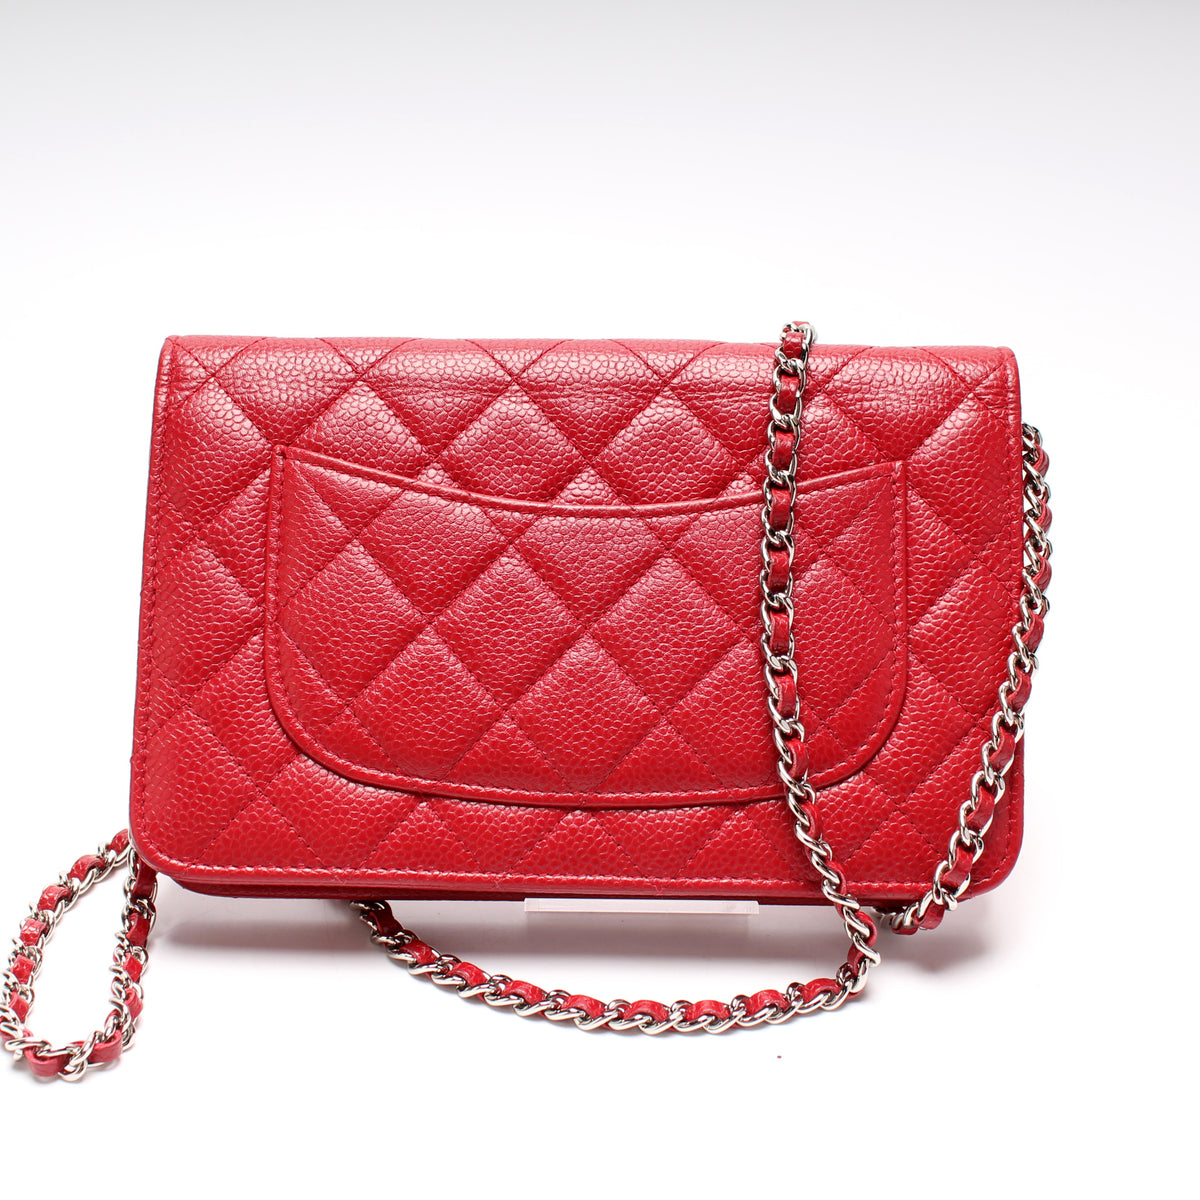 Sell To Us – Keeks Designer Handbags